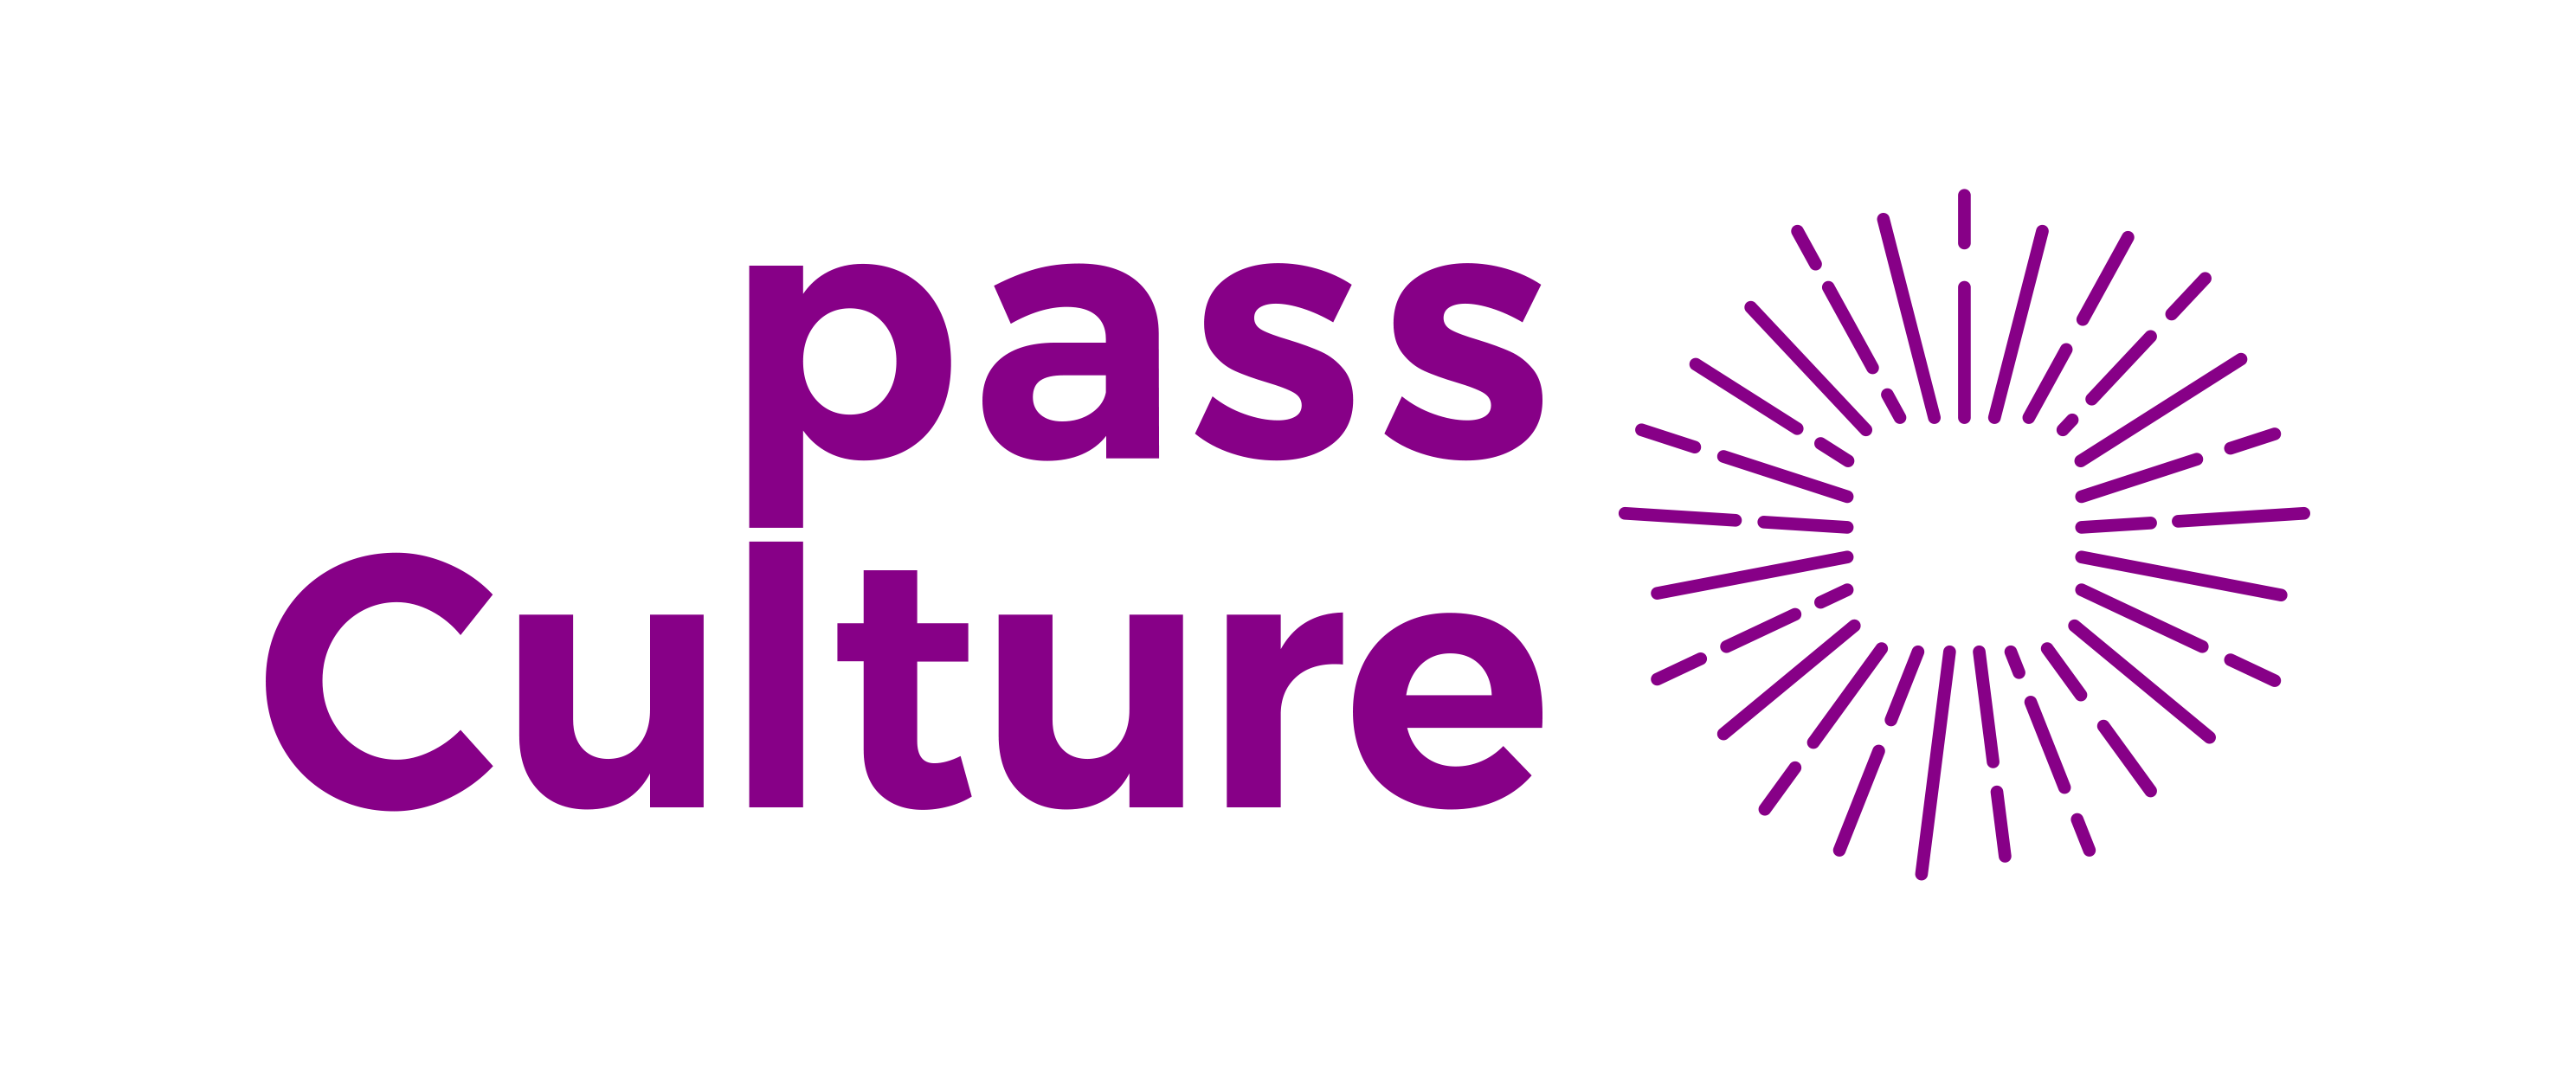 Logo_du_Pass_Culture.png